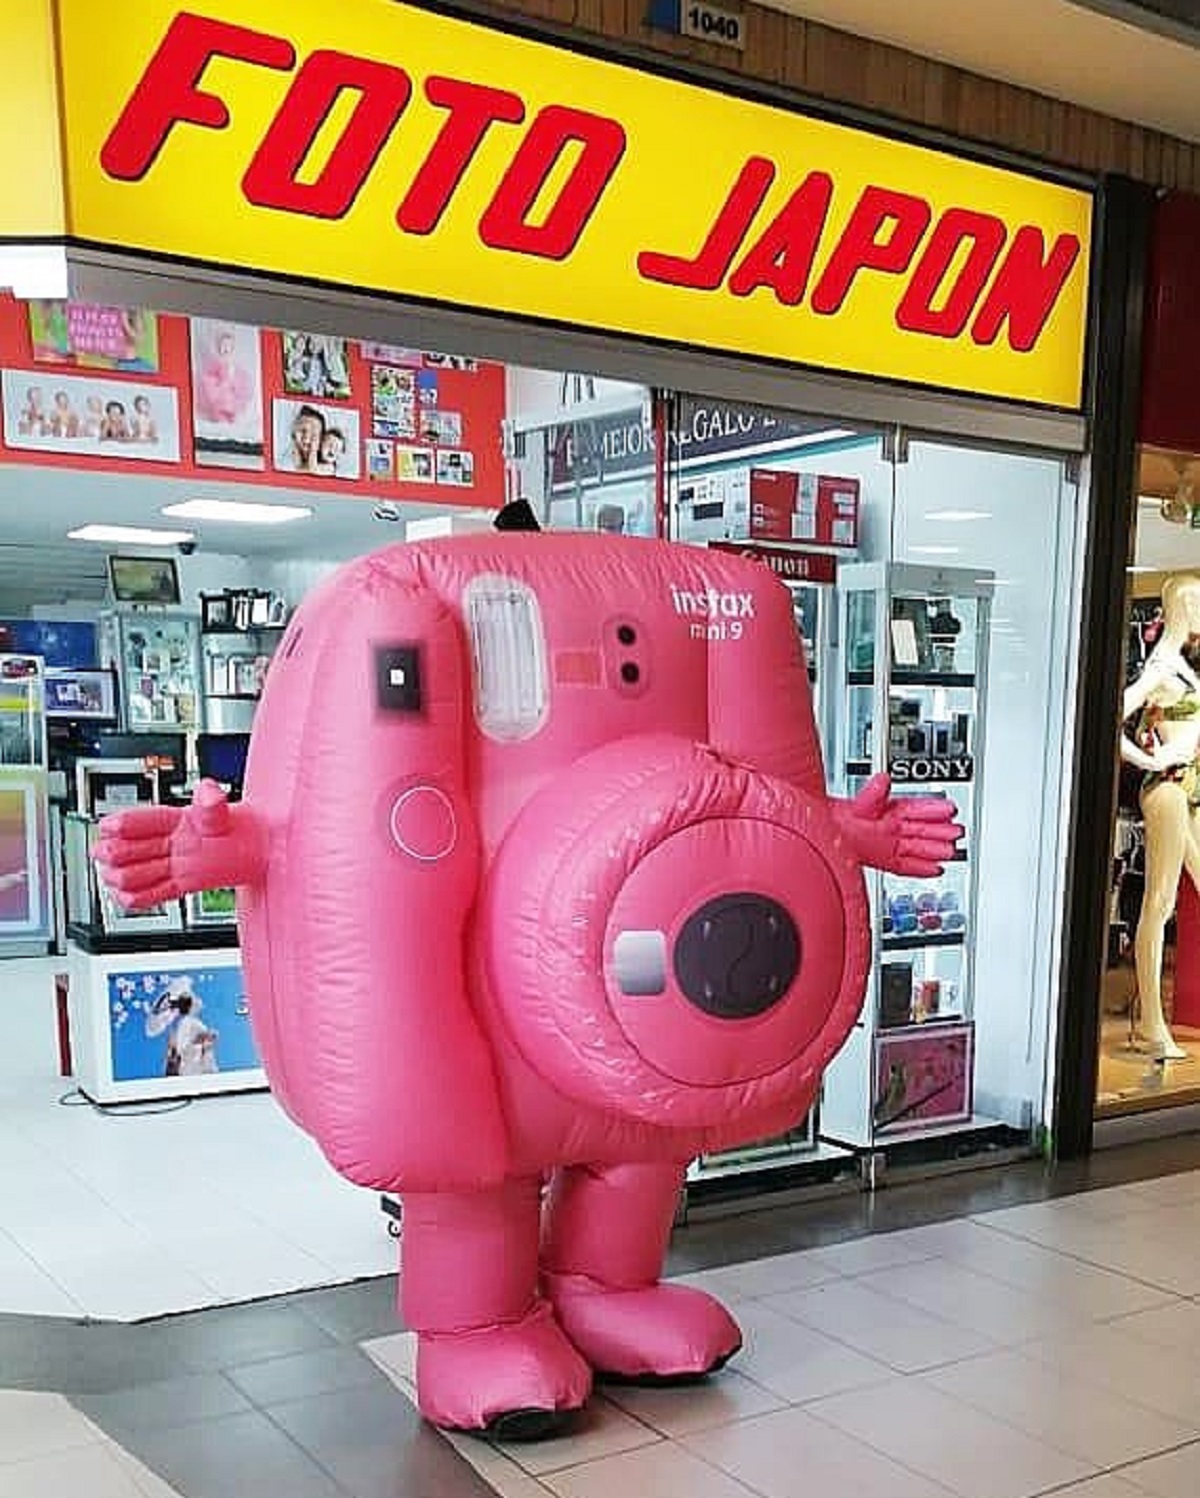 Foto Japón, en nota sobre qué pasó con la tienda que revelaba rollos de fotos